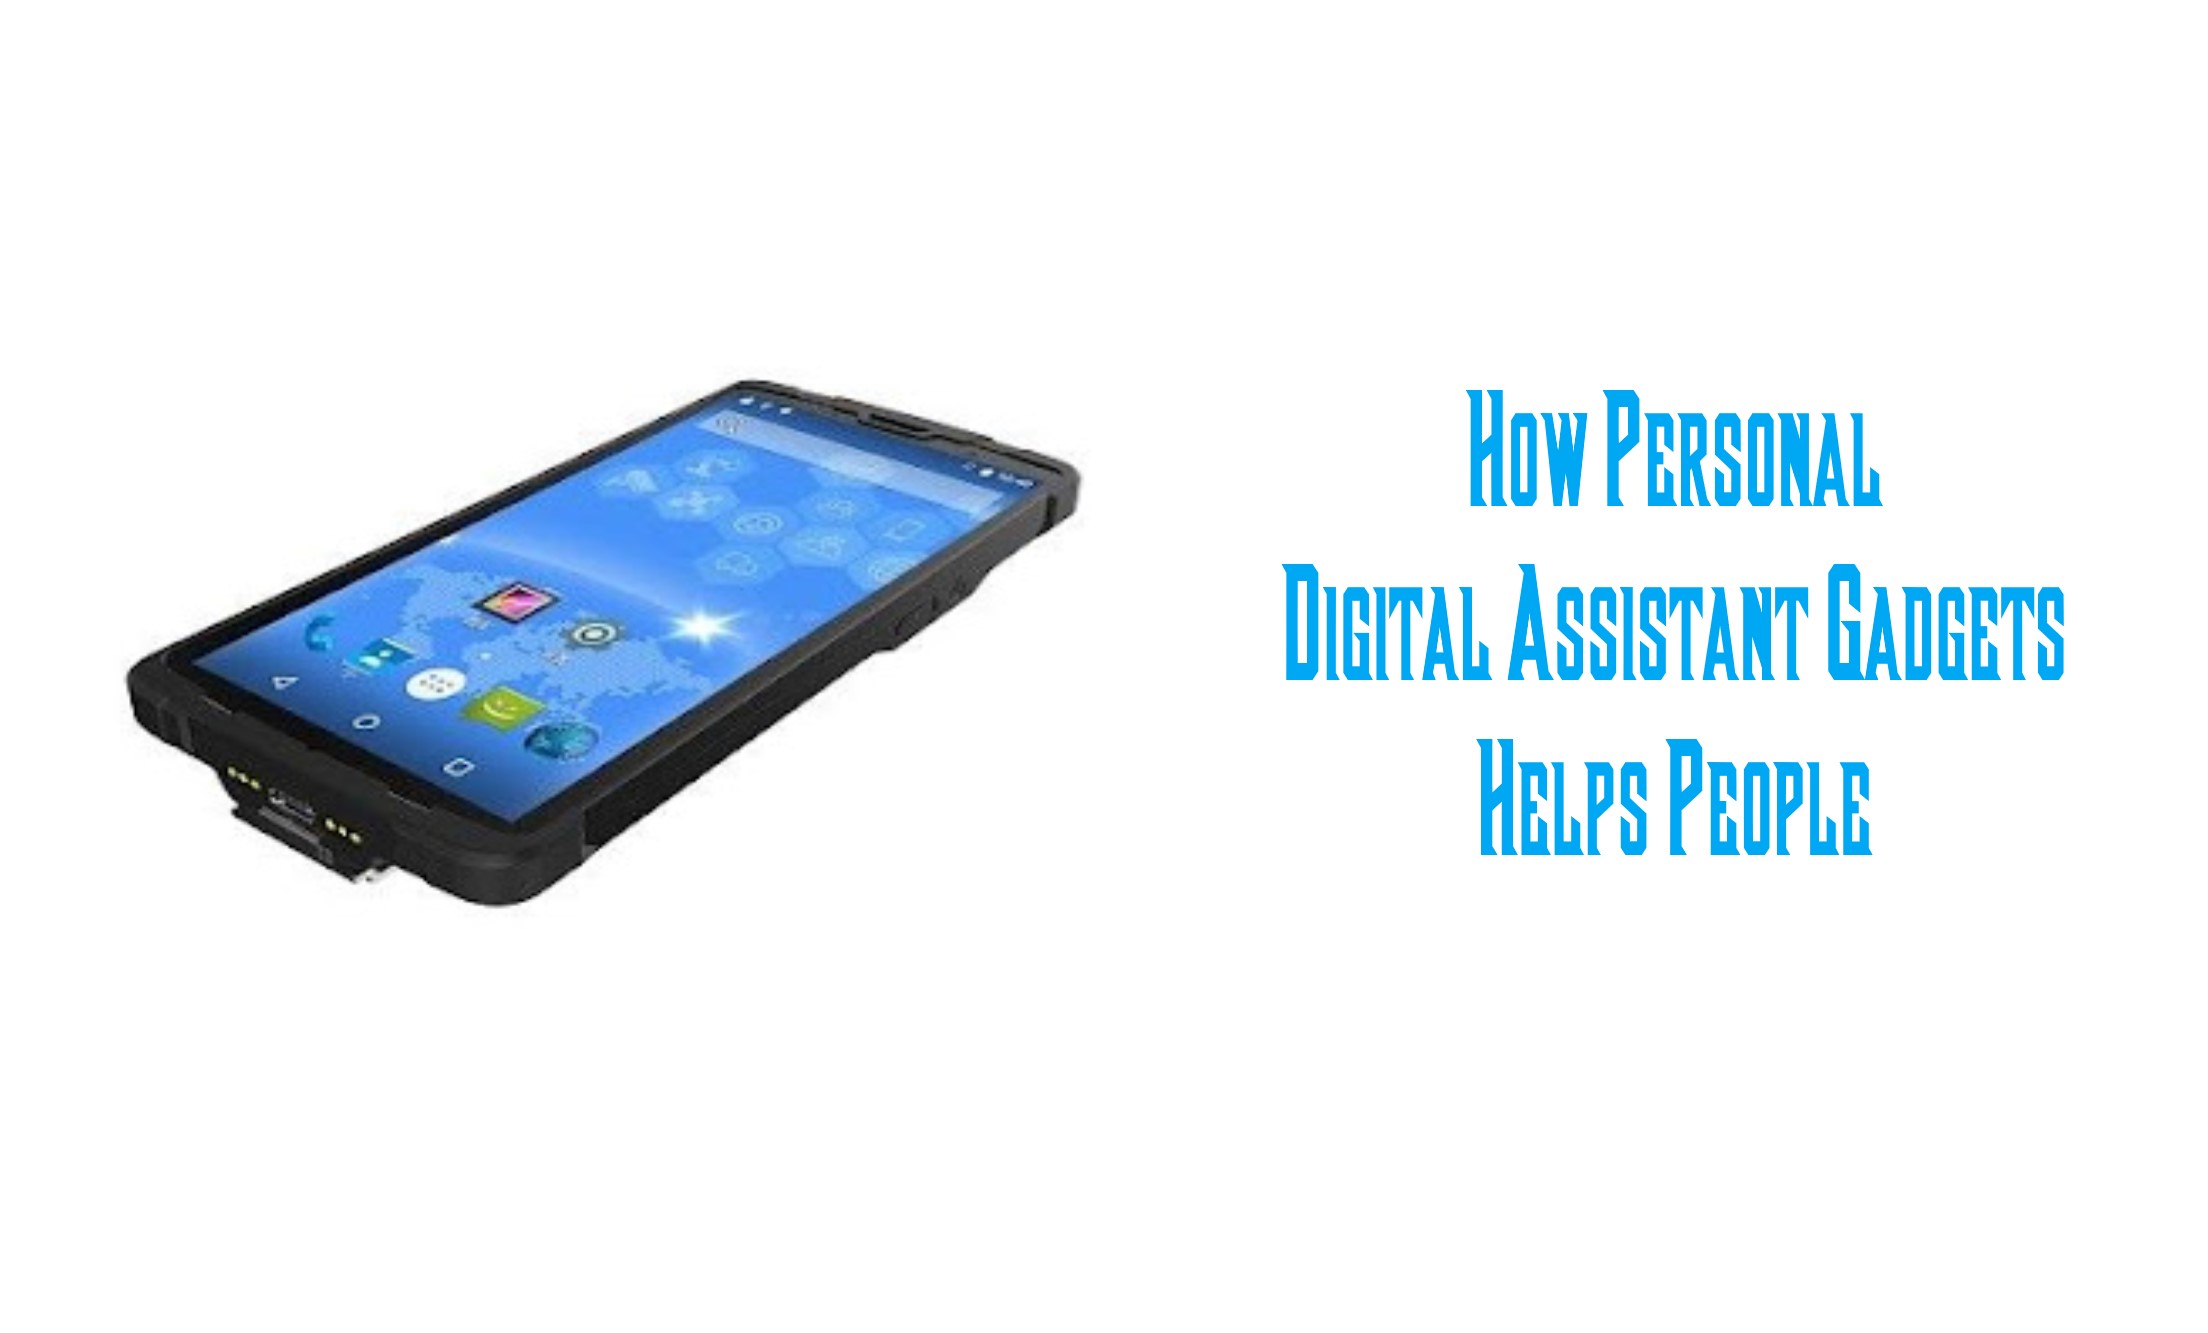 Personal Digital Assistant Gadget